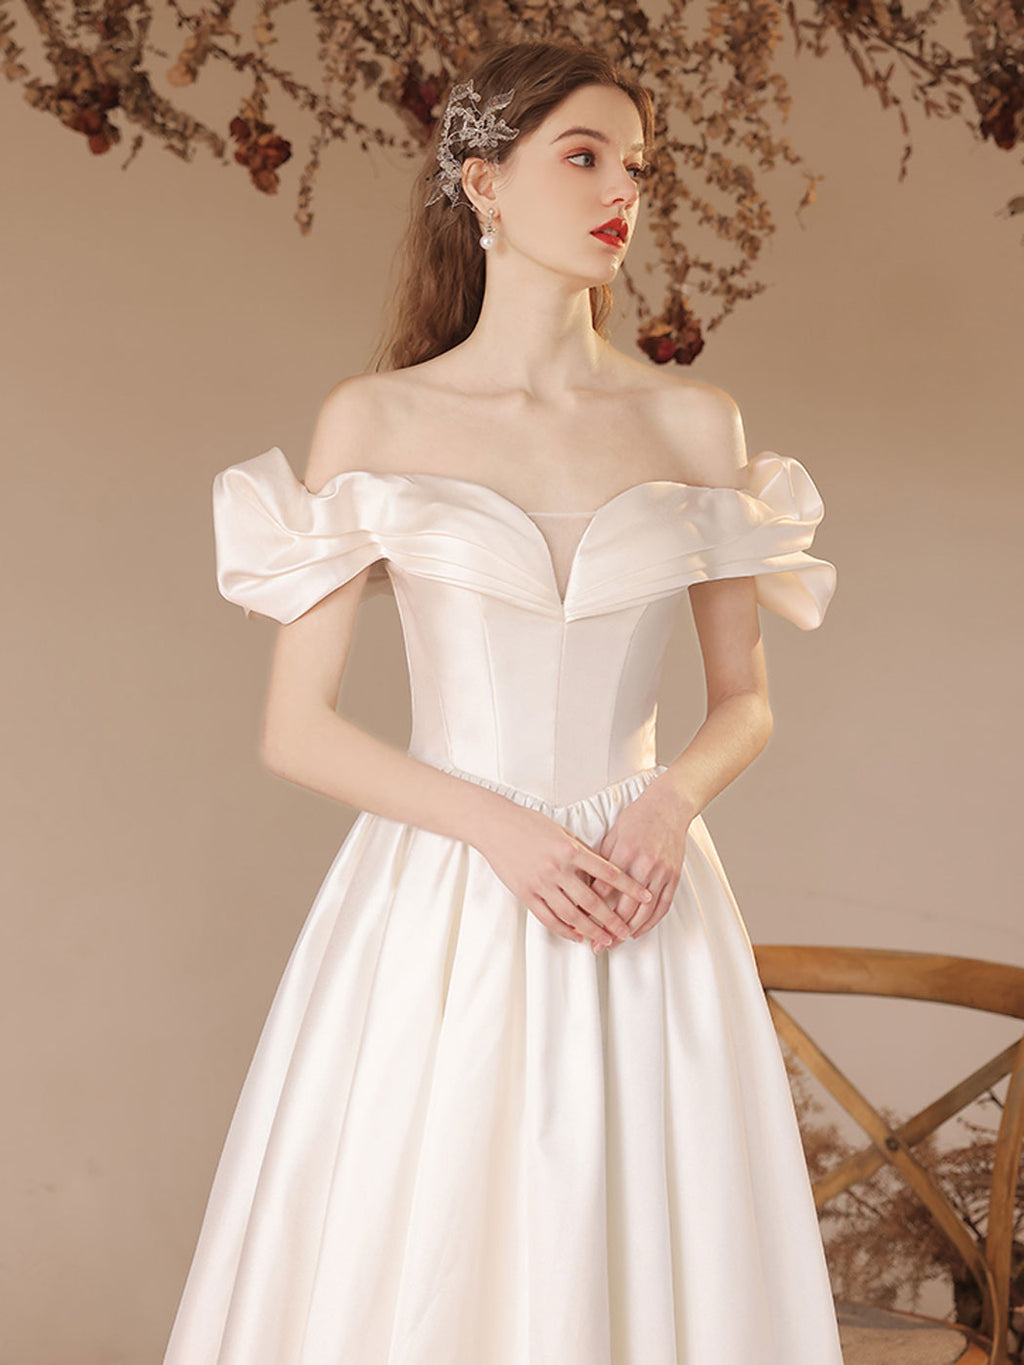 A-Line Off Shoulder Satin Beige Long Prom Dress, Beige Formal Evening Dress